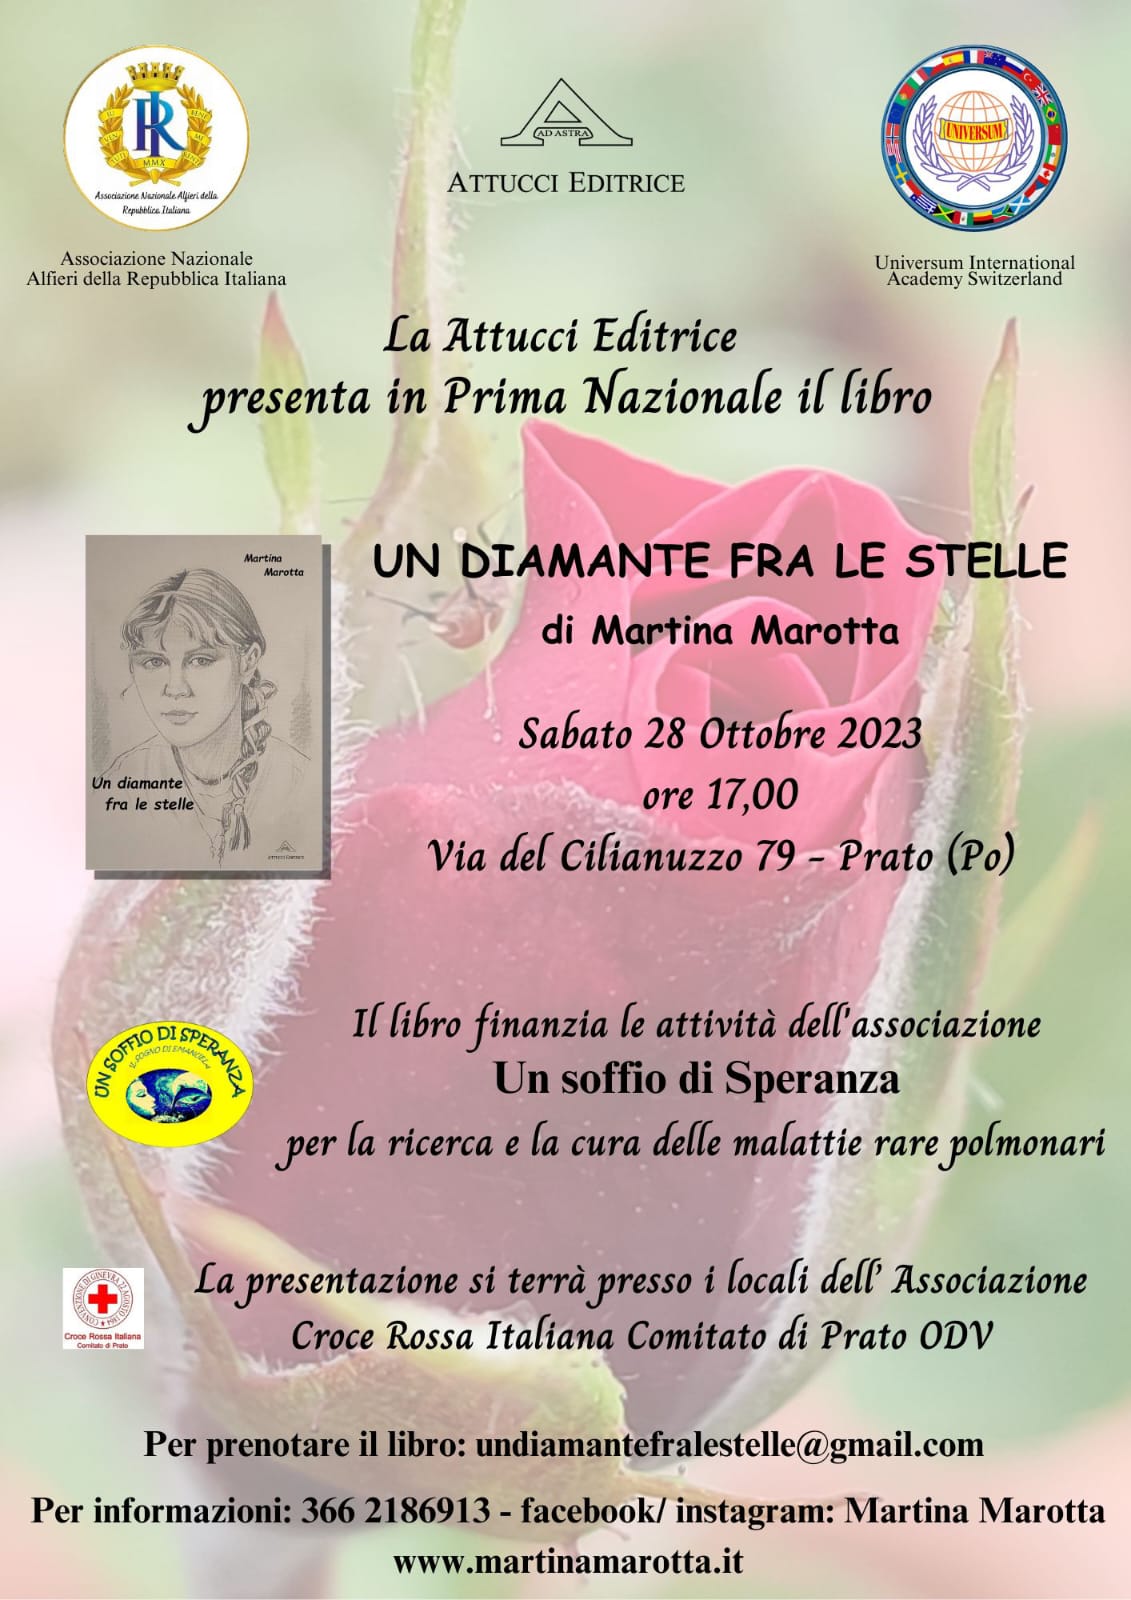 28 ottobre ore 17 presentazione “UN DIAMANTE FRA LE STELLE” di Martina Marotta